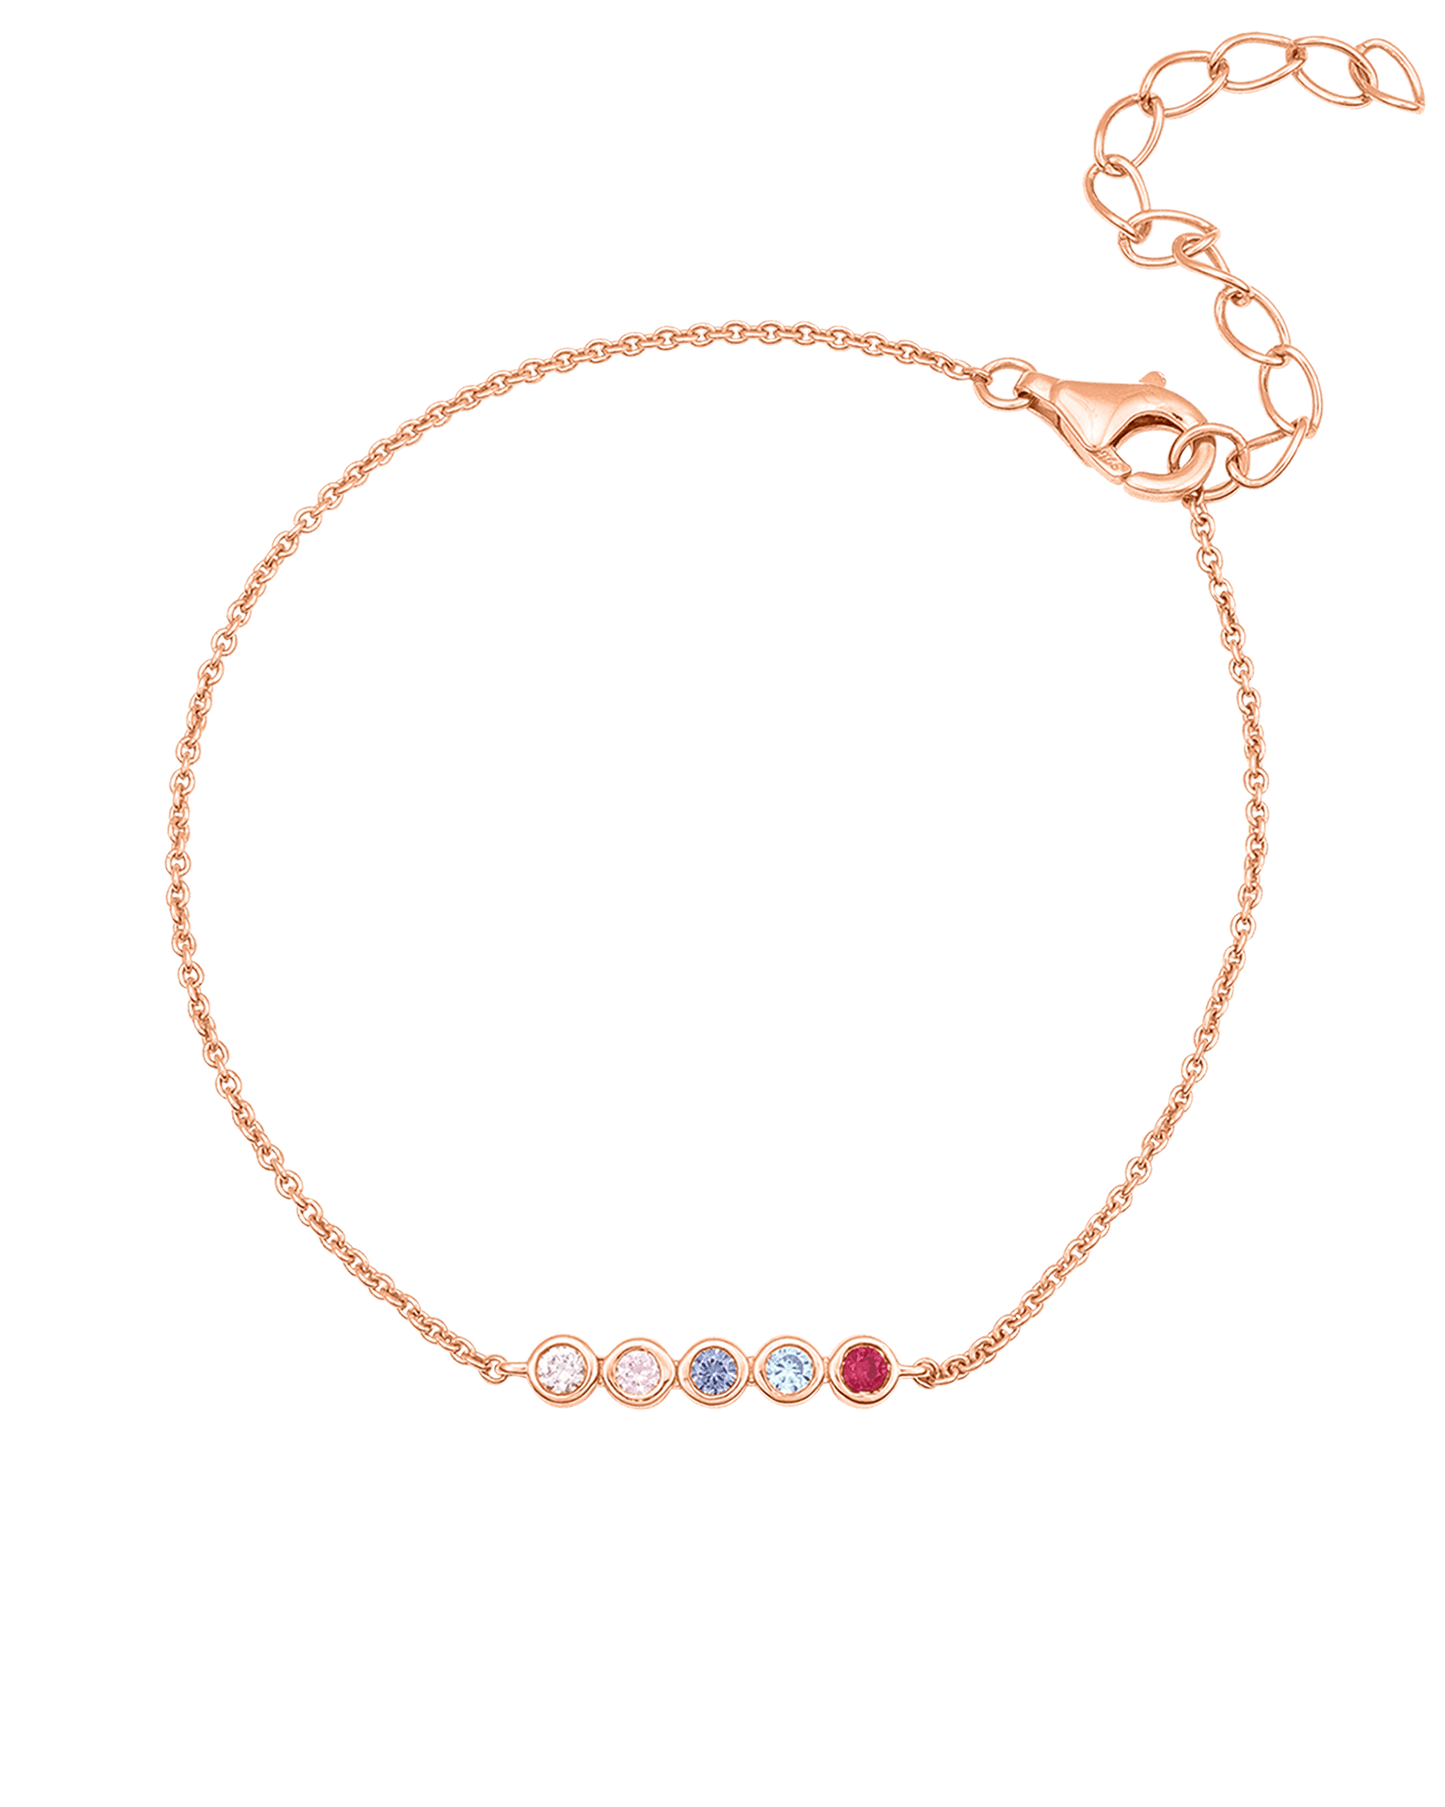 Bauble Birthstone Bracelet - 925 Sterling Silver Bracelets magal-dev 